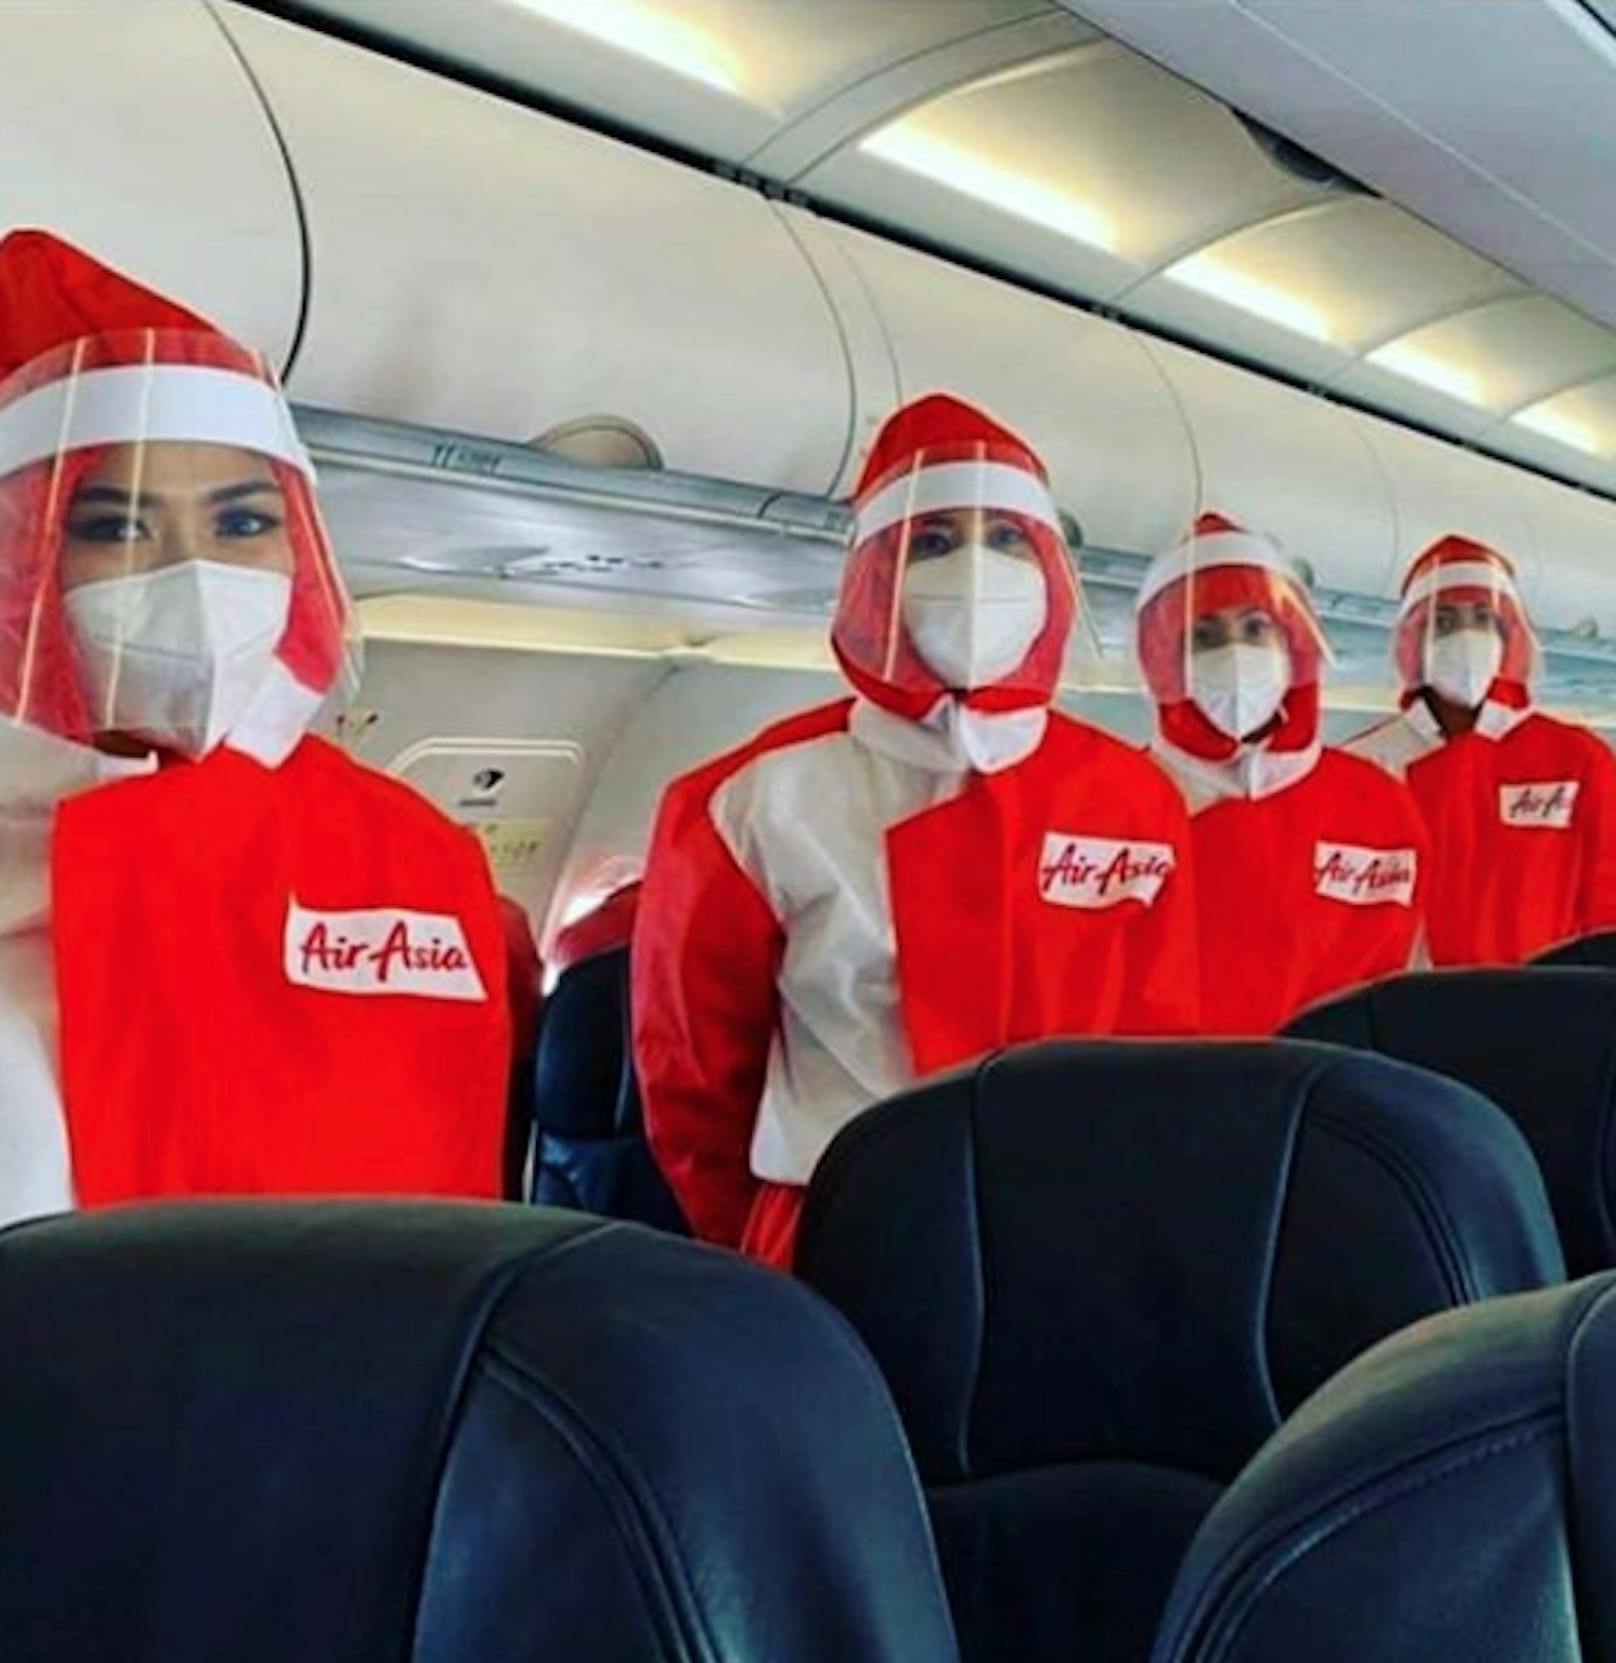 Air Asia setzt auf kräftiges Rot und Weiß.